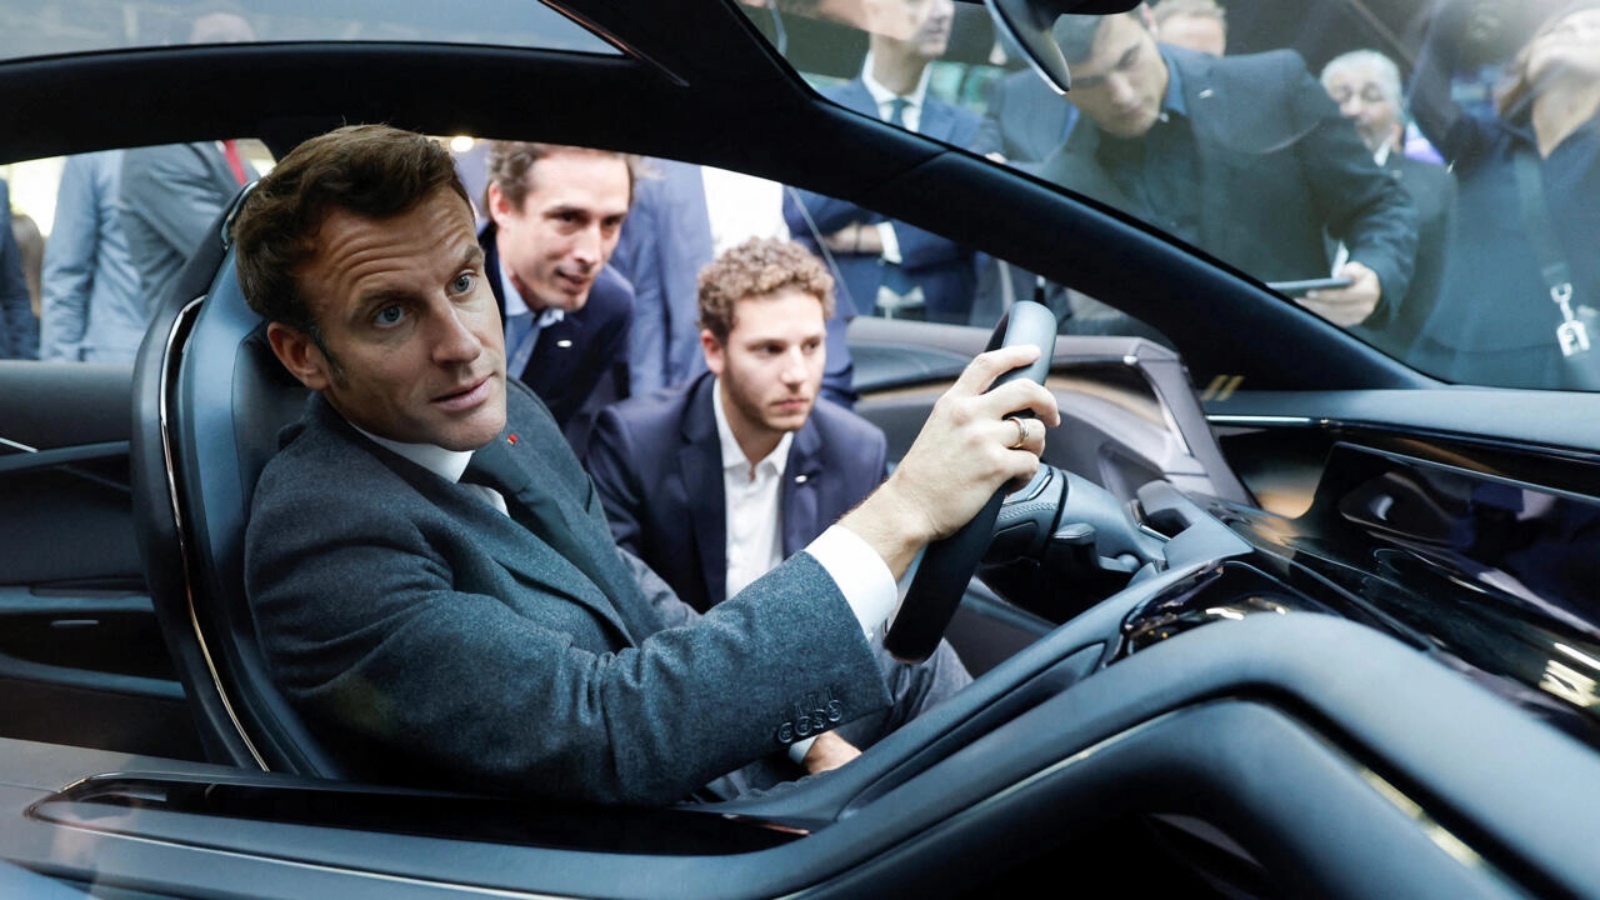 الرئيس الفرنسي إيمانويل ماكرون في سيارة تعمل بالطاقة الهيدروجينية من نوع Hopium Machina Vision في معرض باريس للسيارات 2022 في 17 أكتوبر 2022